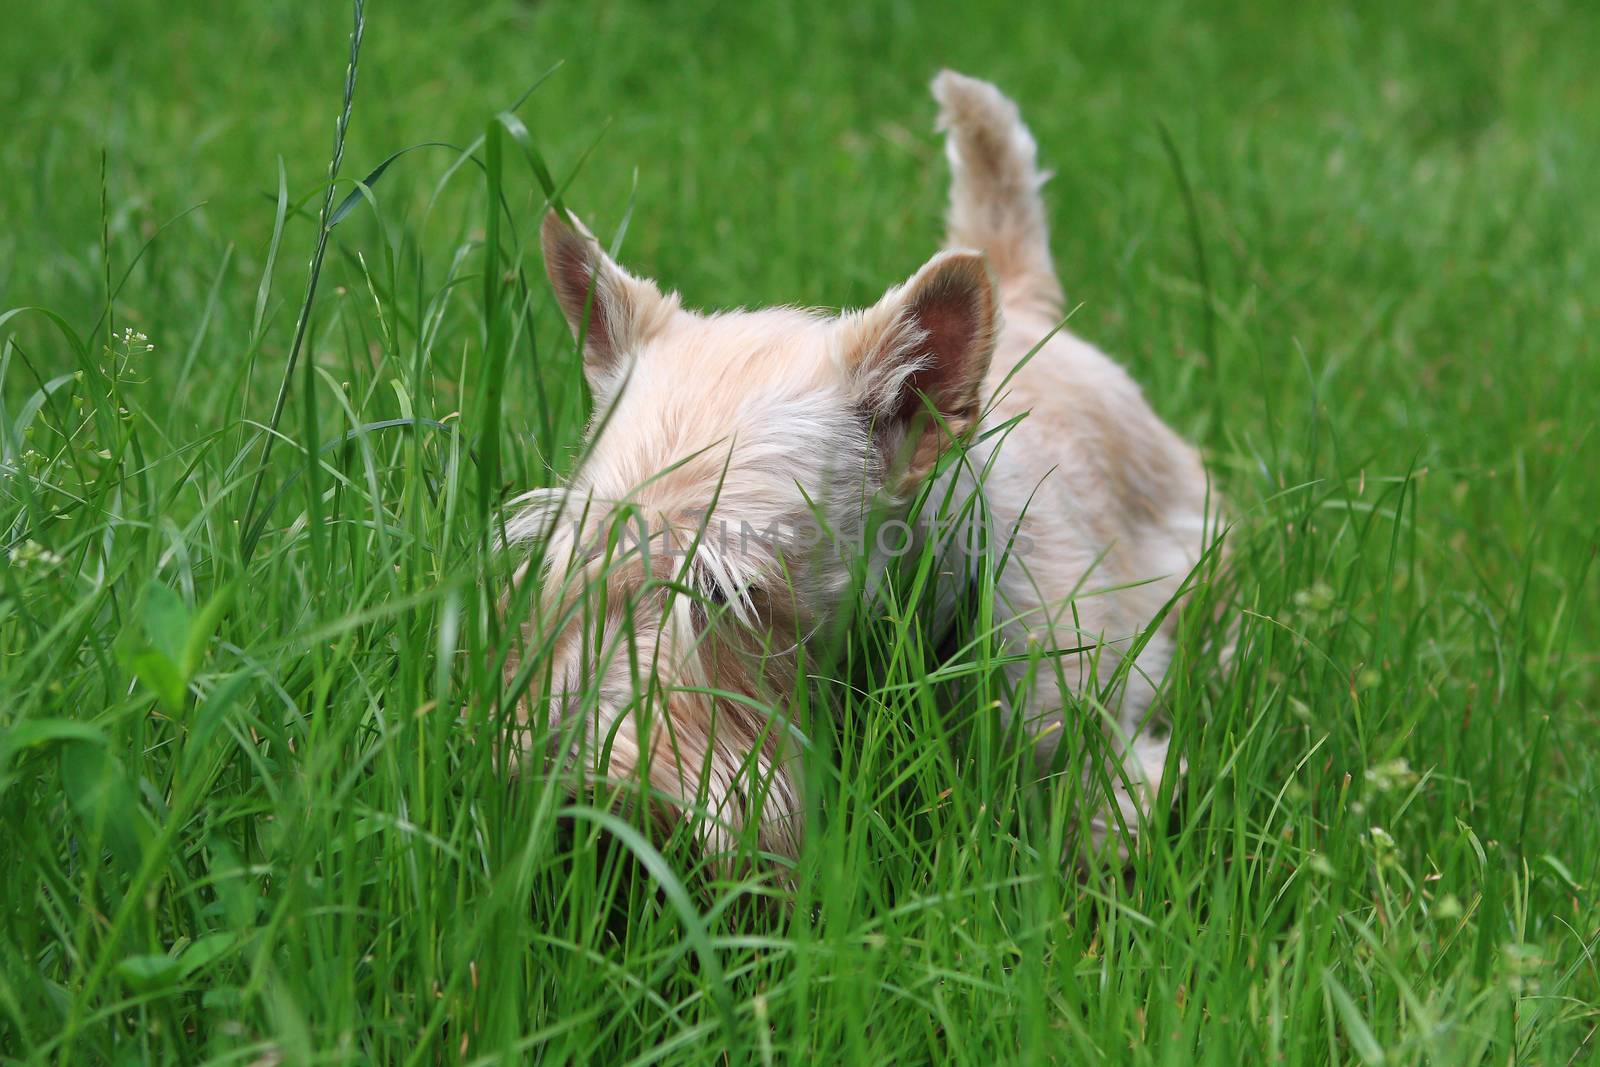 Wheaten Scottish Terrier walks in the garden by cococinema